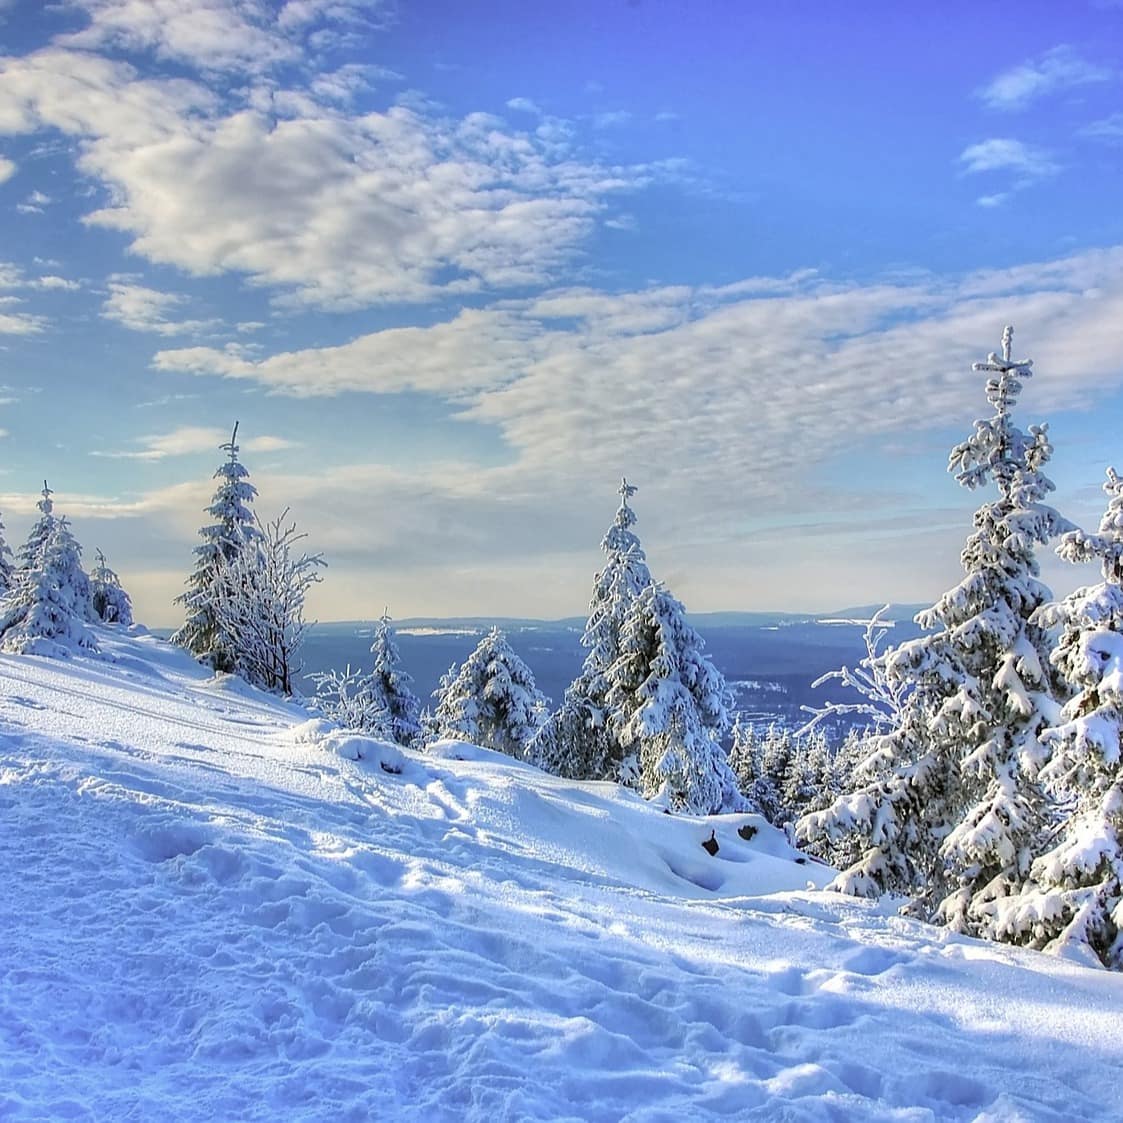 Skifahren – mit tollen Schwüngen hinunter ins Tal!